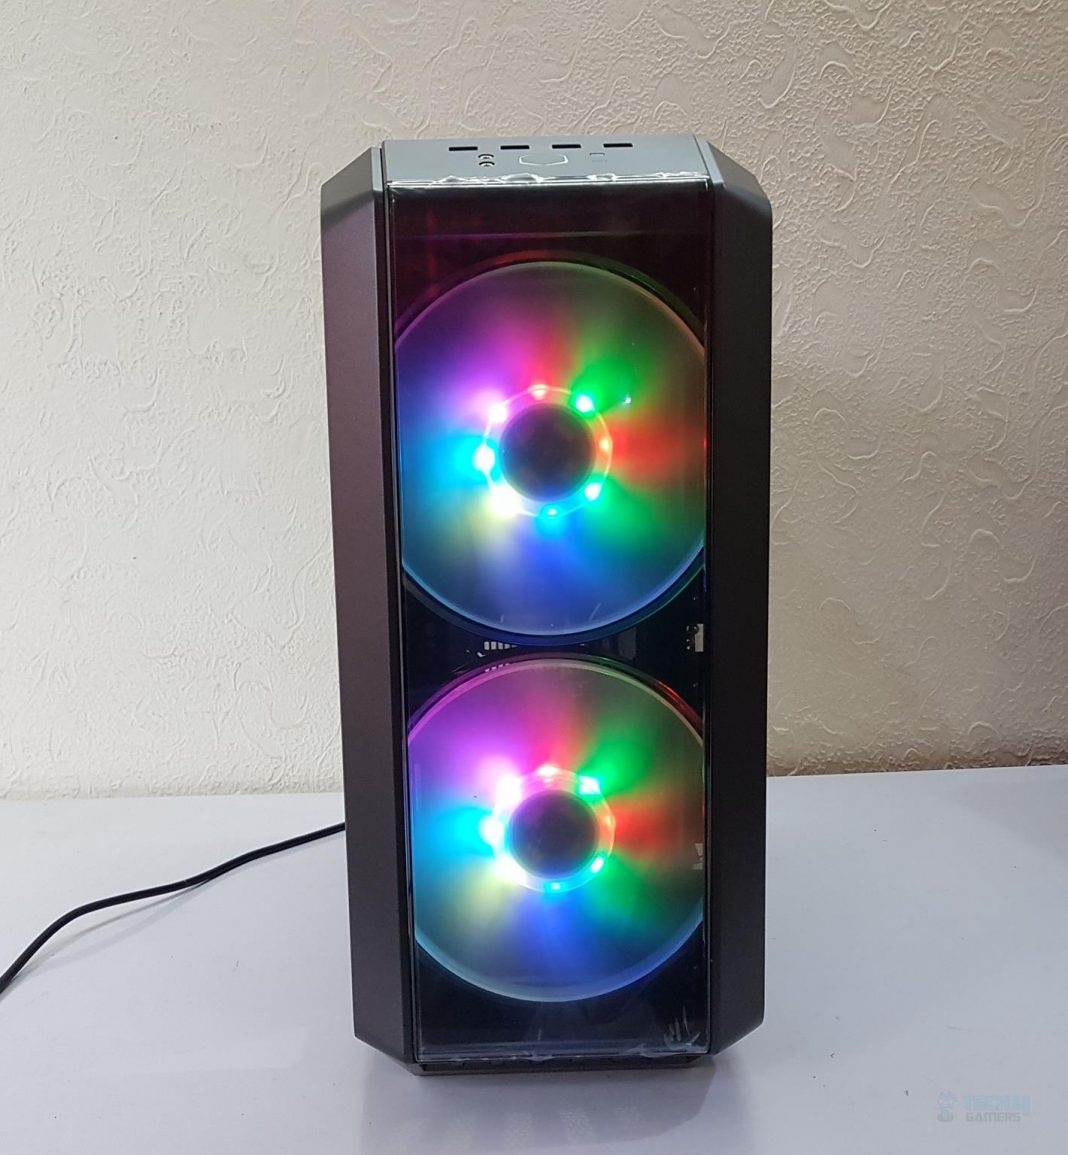 Cooler Master 500 RGB Lighting